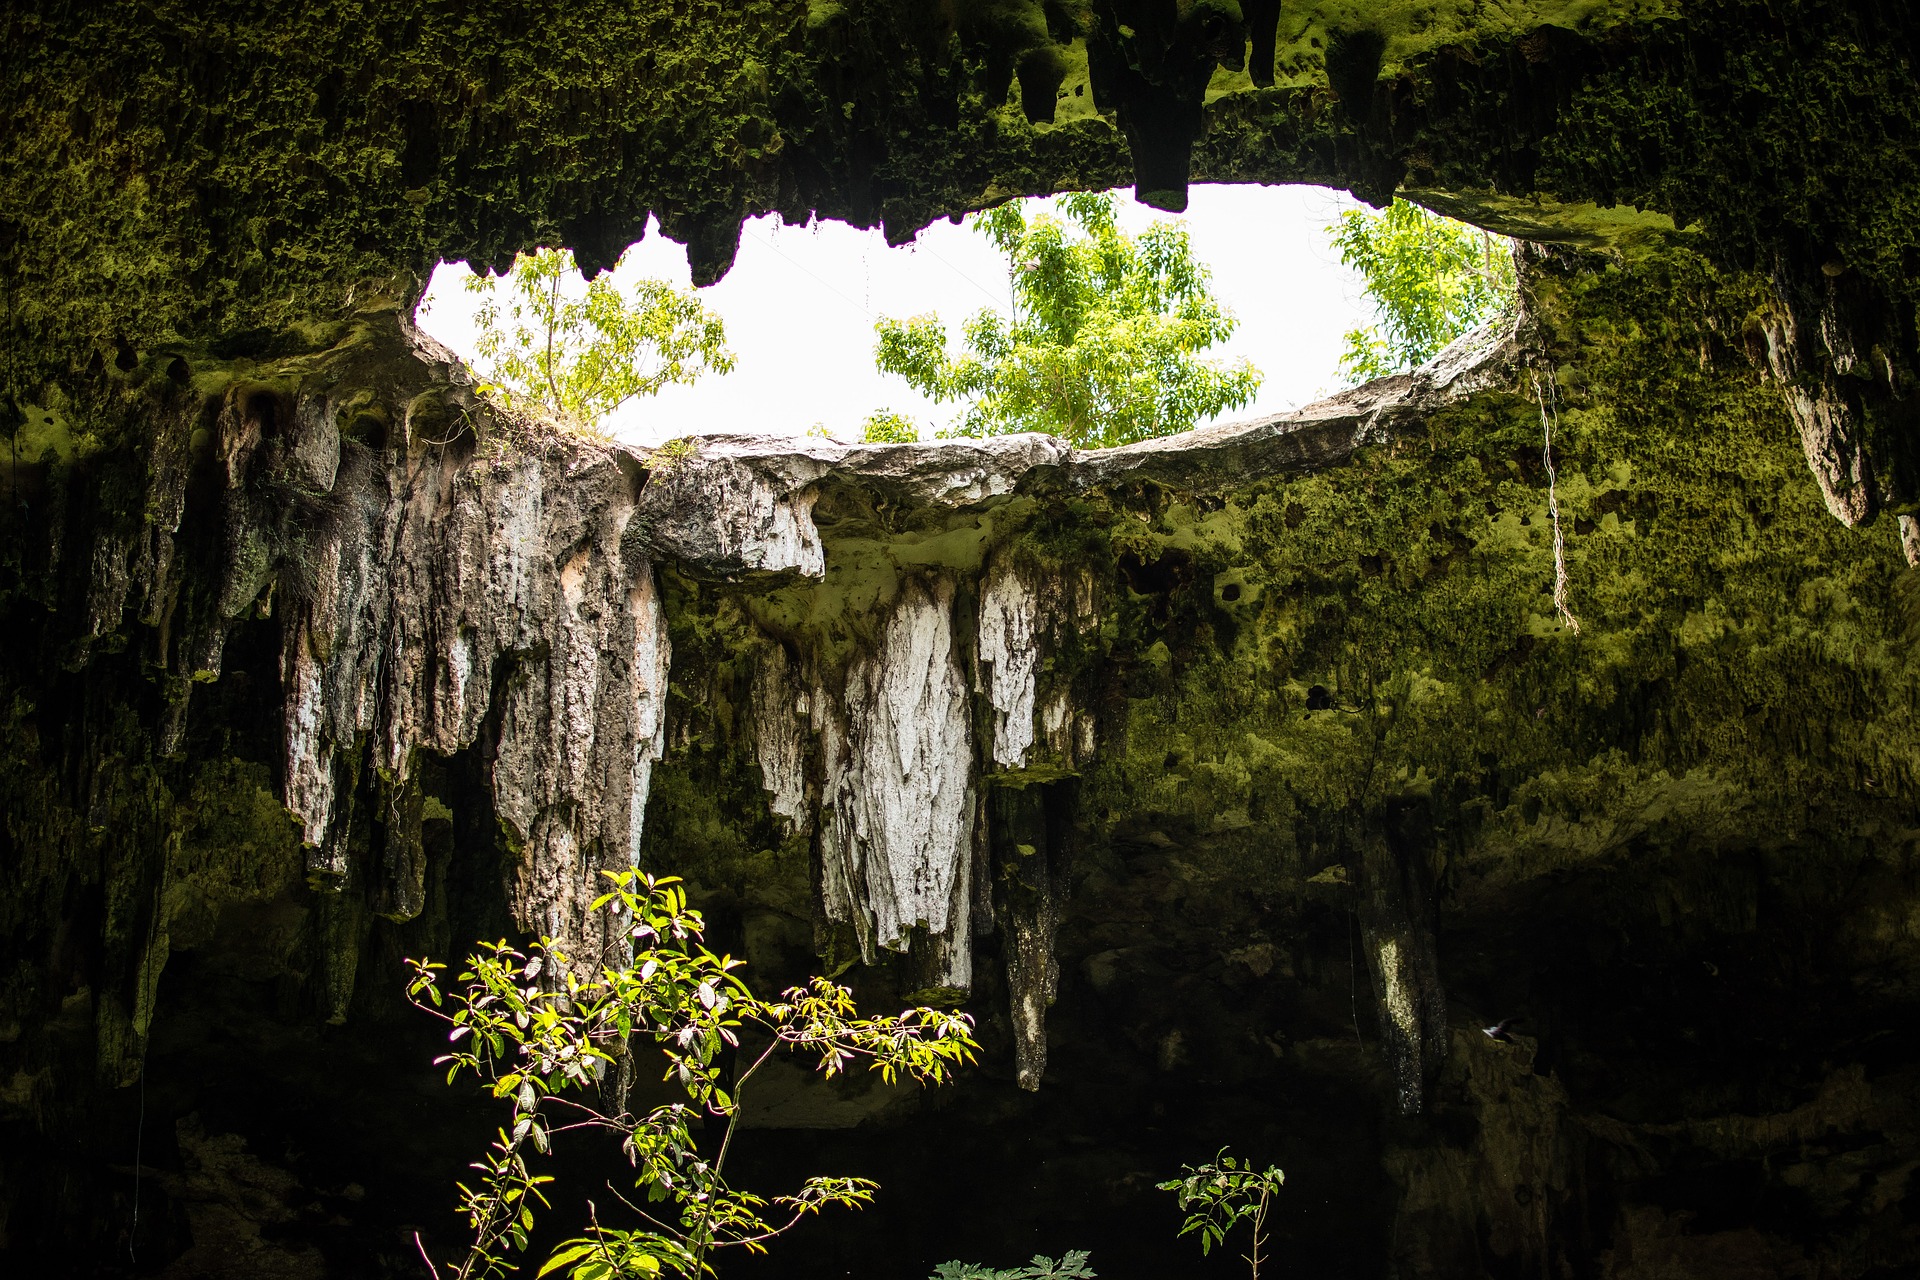 Cenote in Mexico